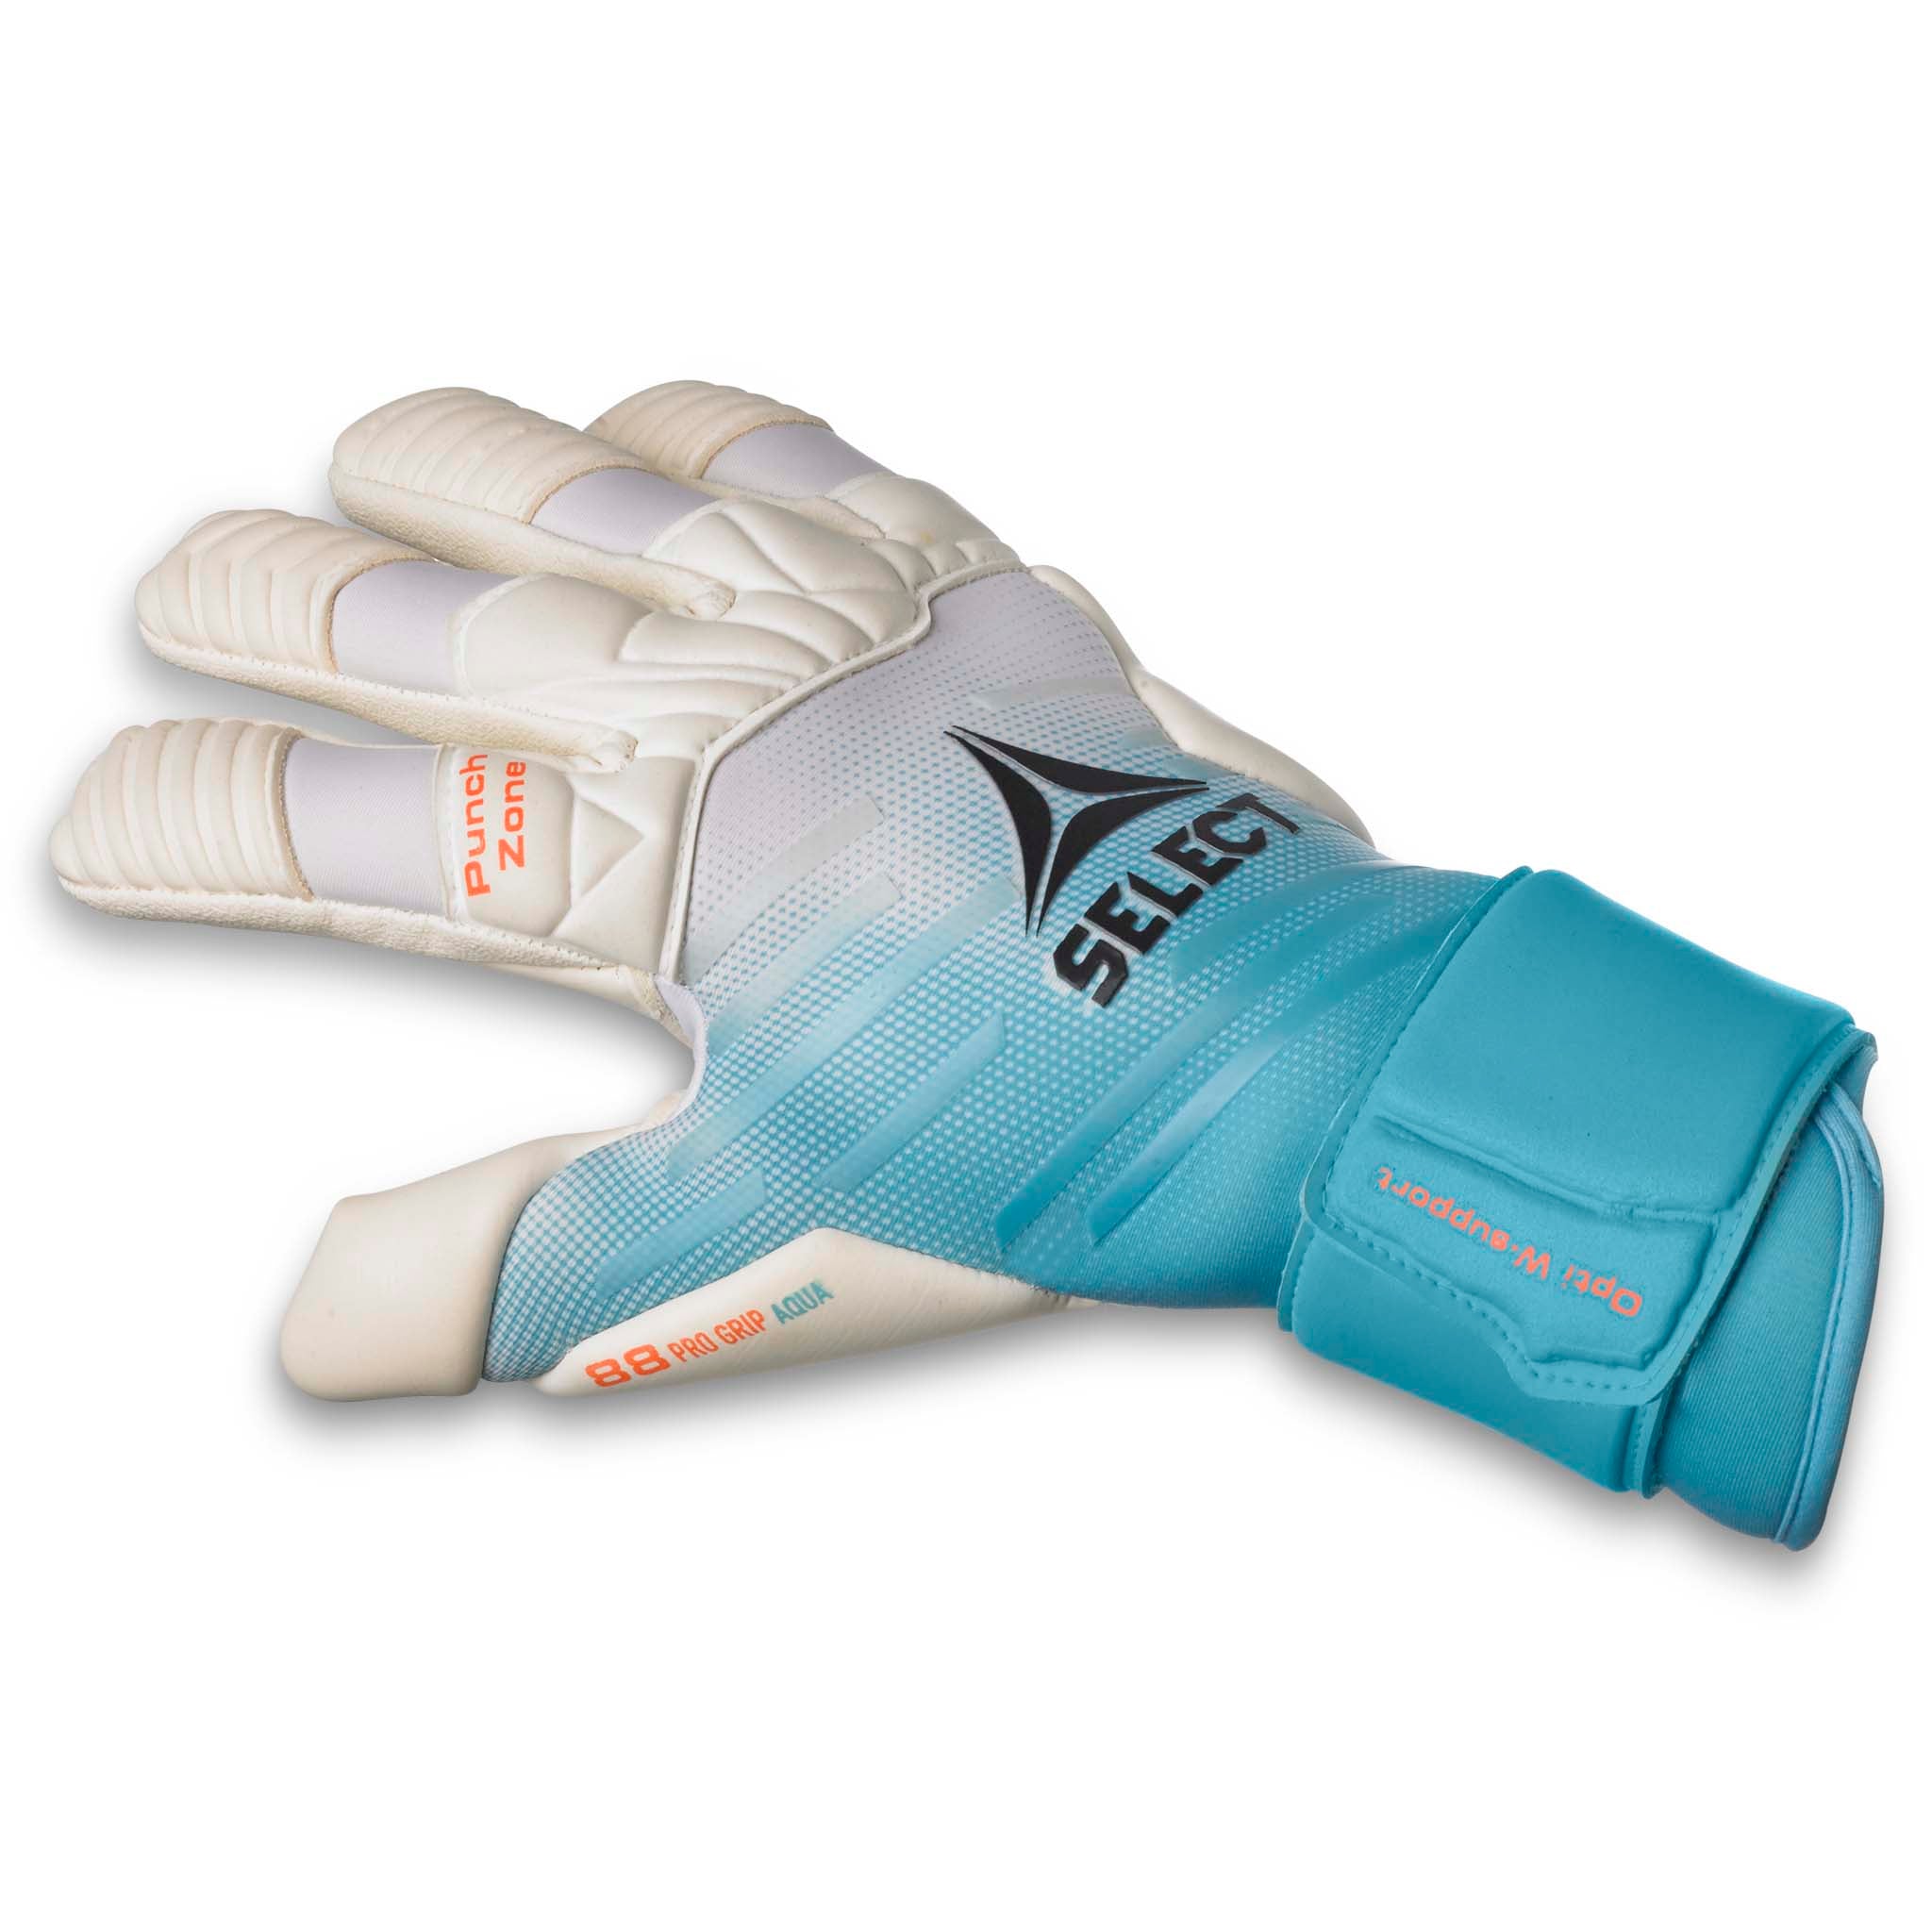 Goalkeeper gloves - 88 Pro Grip Aqua #colour_turquoise/white